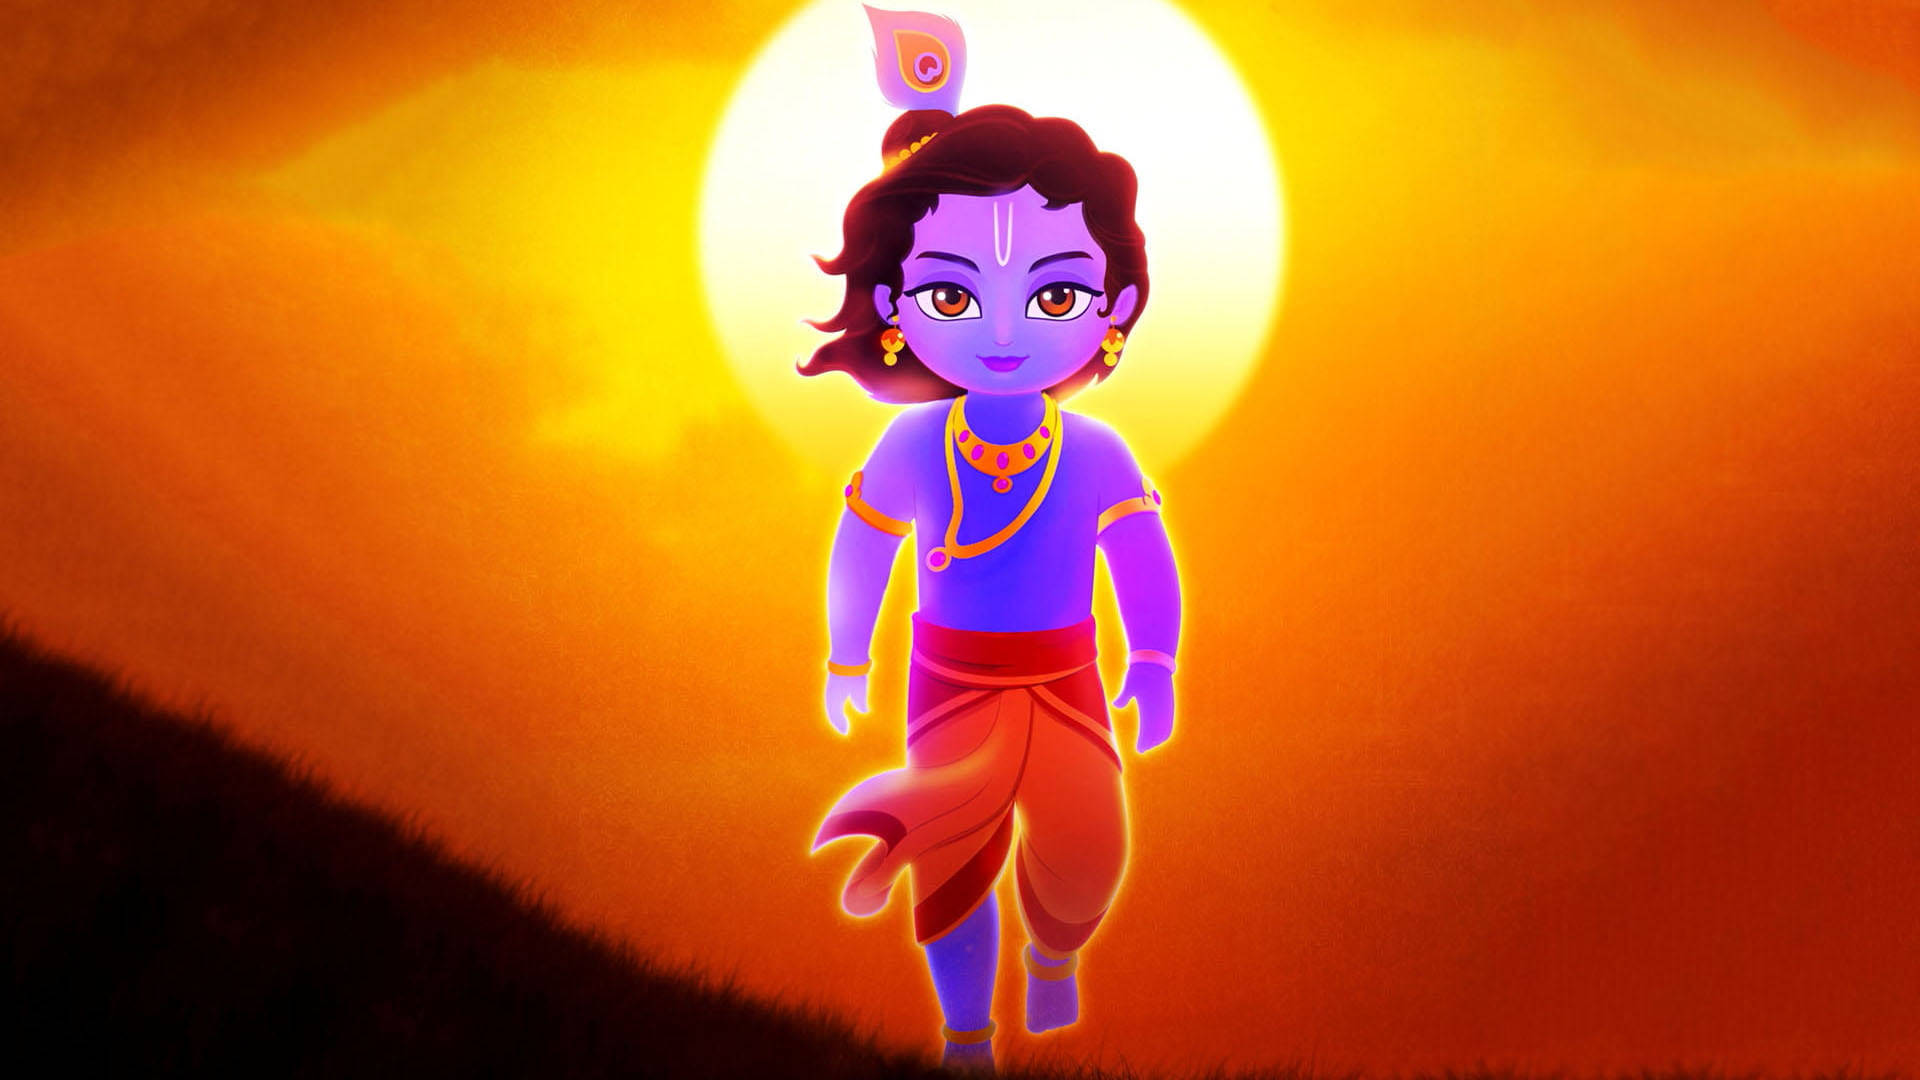 Young Shri Krishna Against Sunset Wallpaper